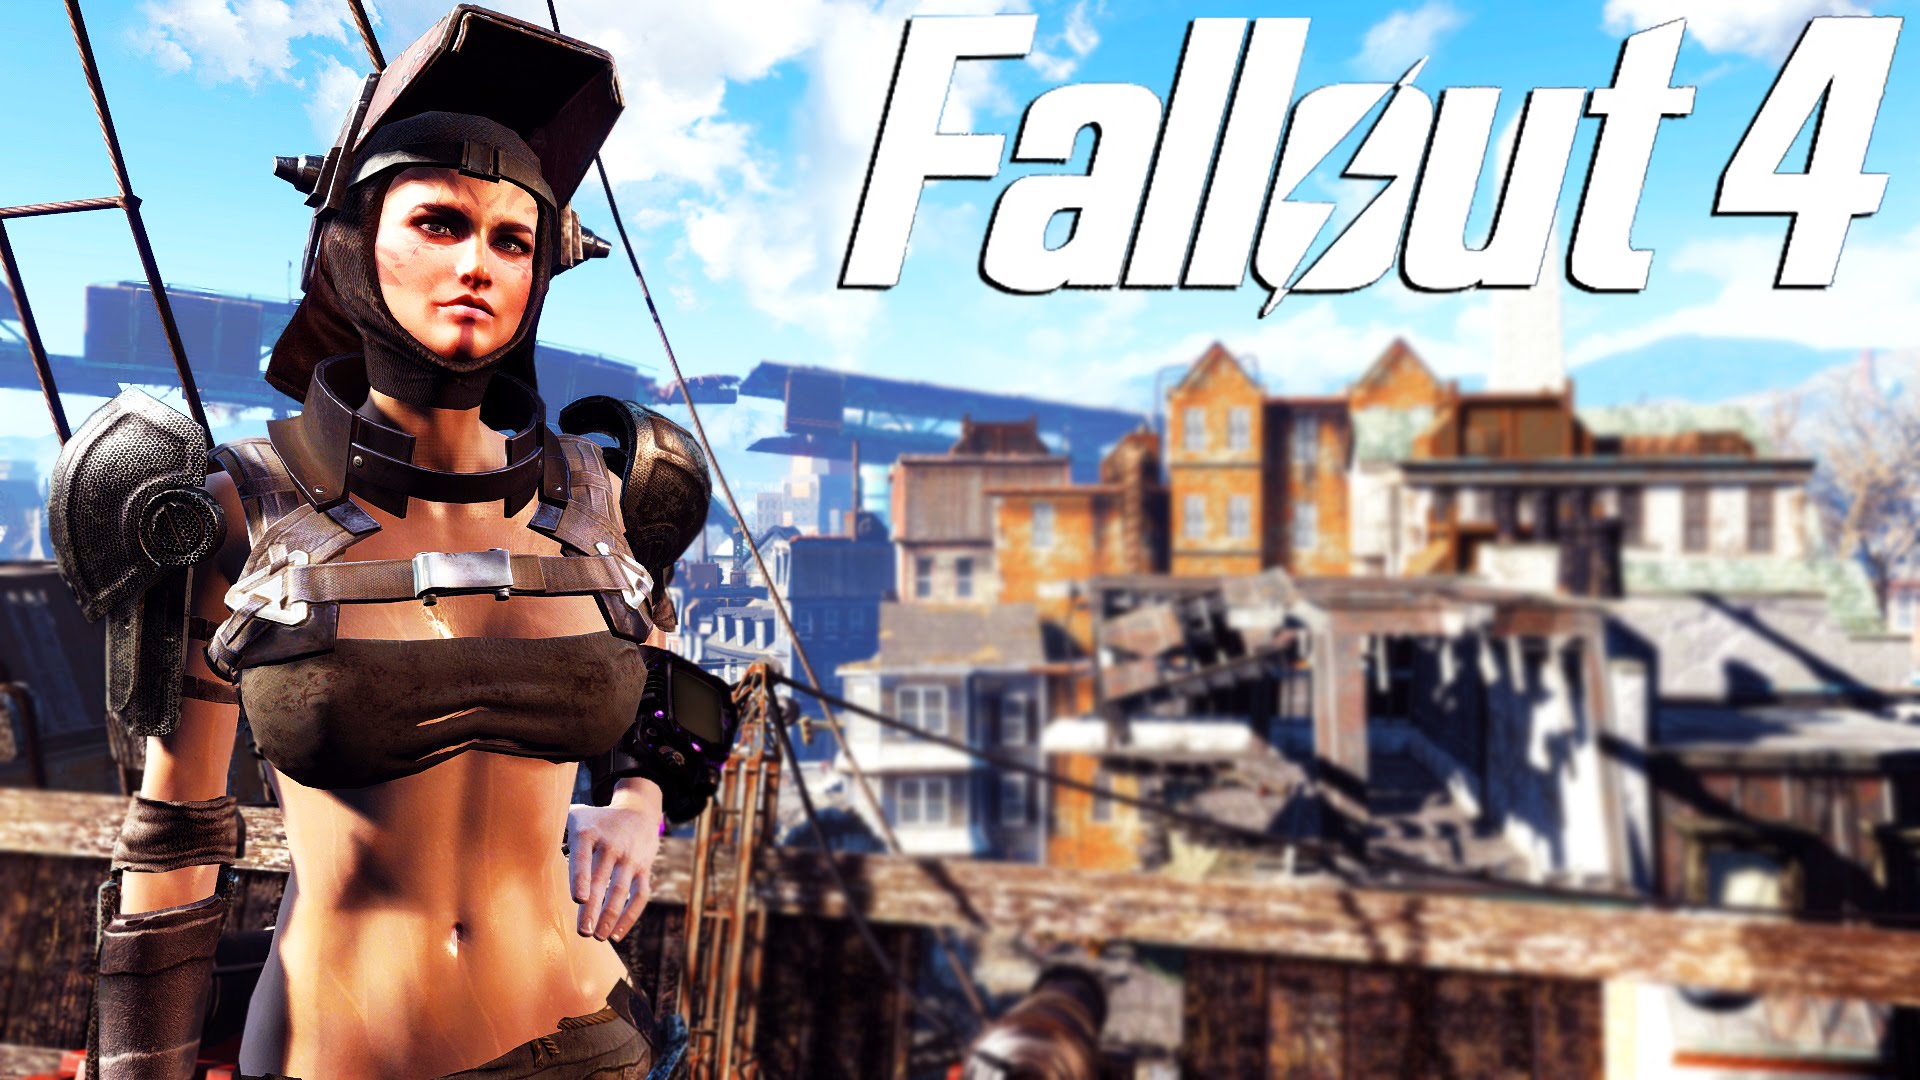 Fallout 4 ücretsiz oluyor! İşte tüm detaylar!